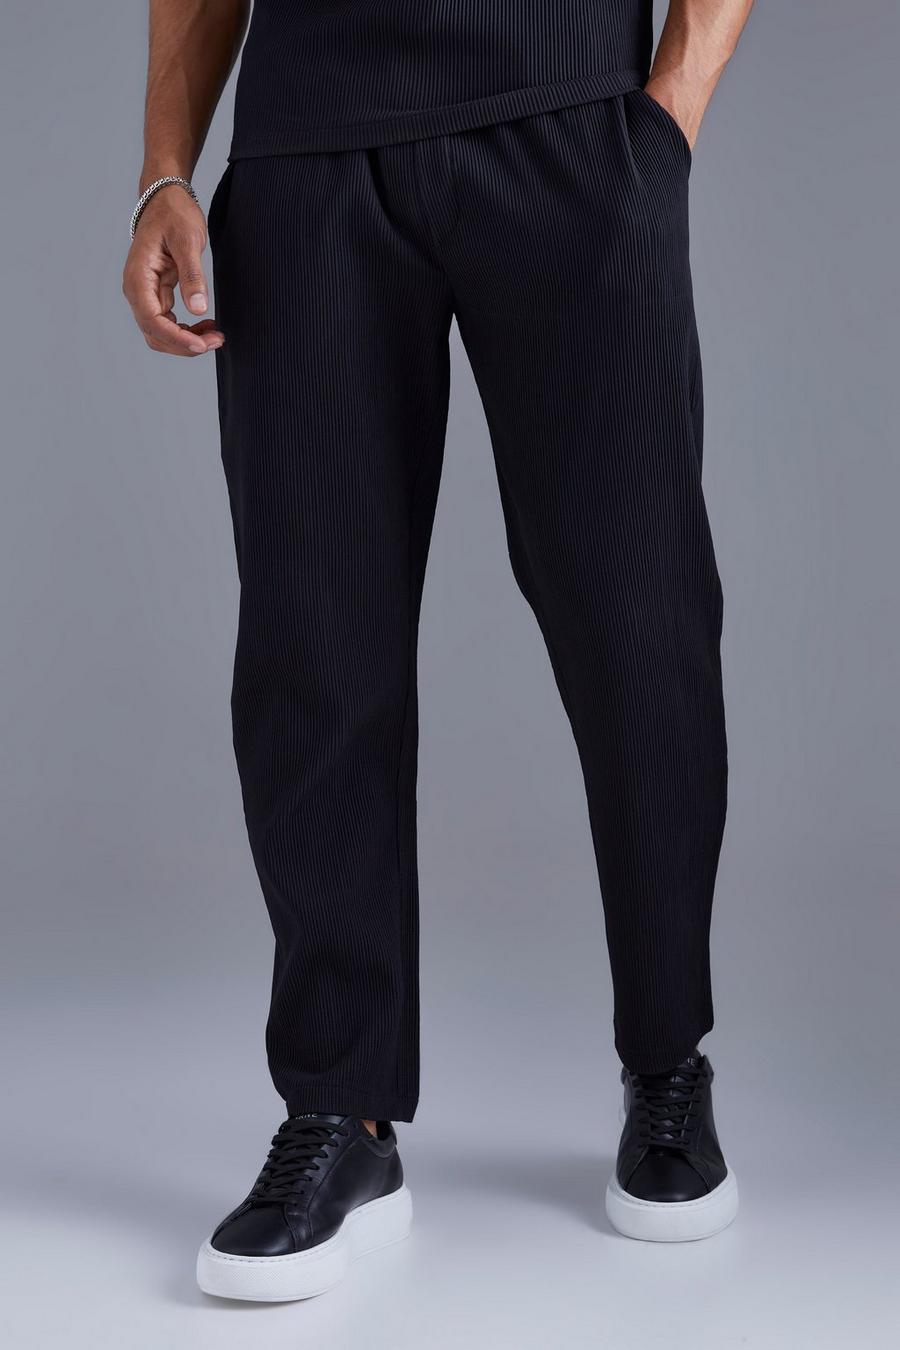 Pantalón plisado ajustado con cintura elástica, Black nero